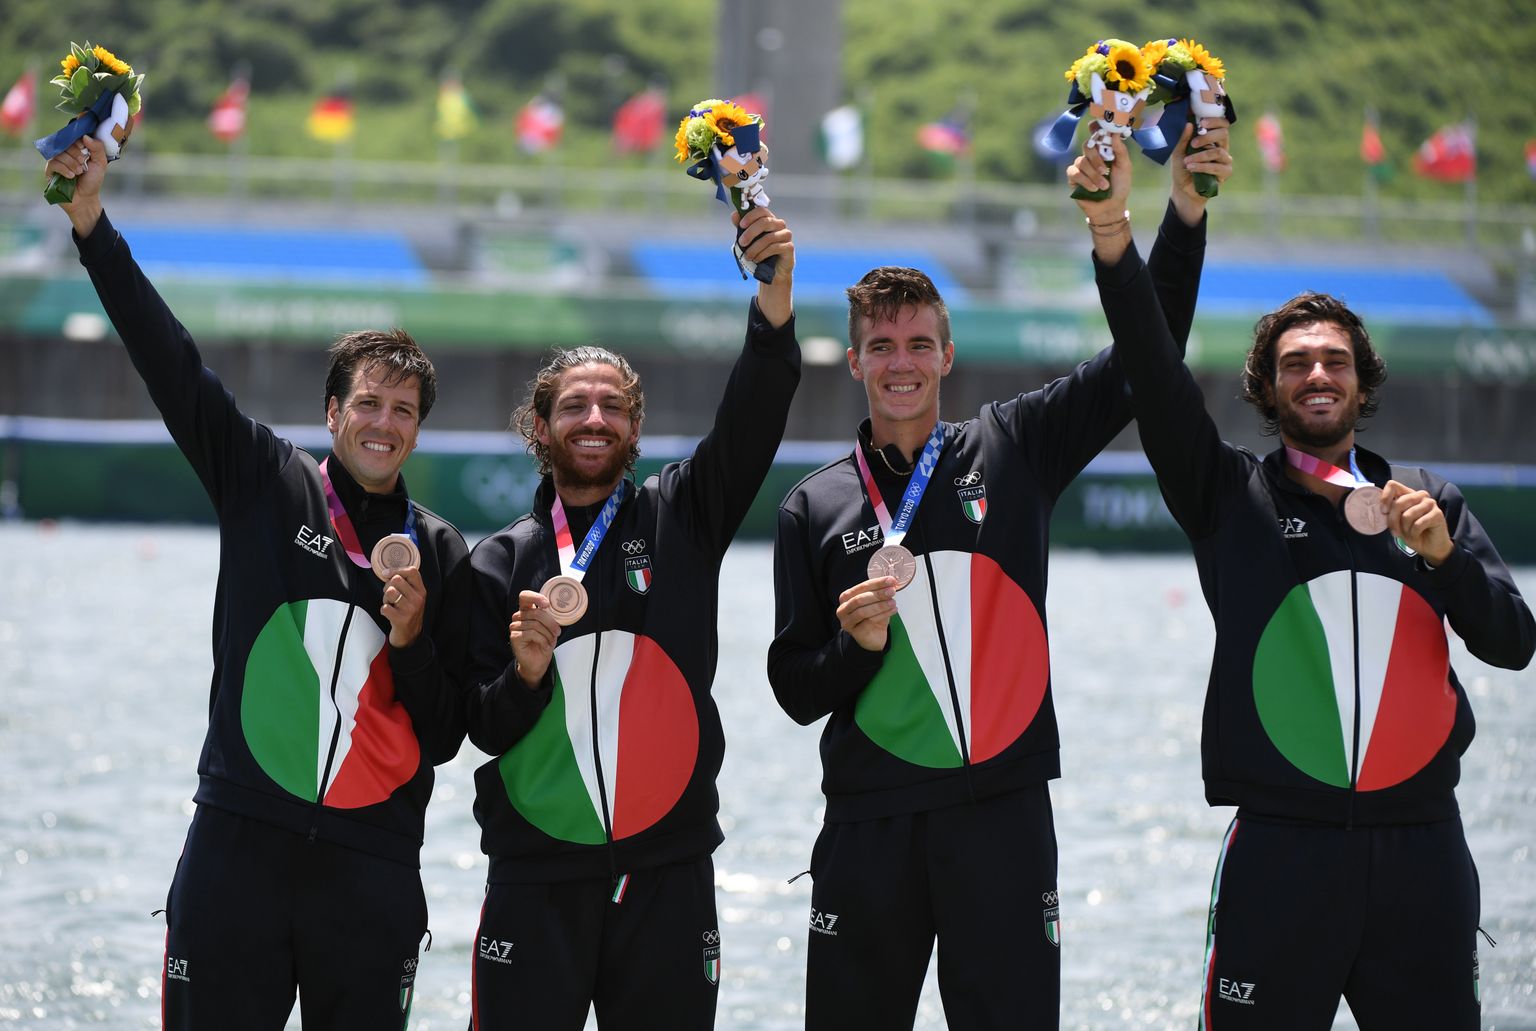 Itaalia paatkond medalit tähistamas. Kuigi Bruno Rosetti saab samuti endale olümpiapronksi, siis tema poodiumile ei pääsenud.